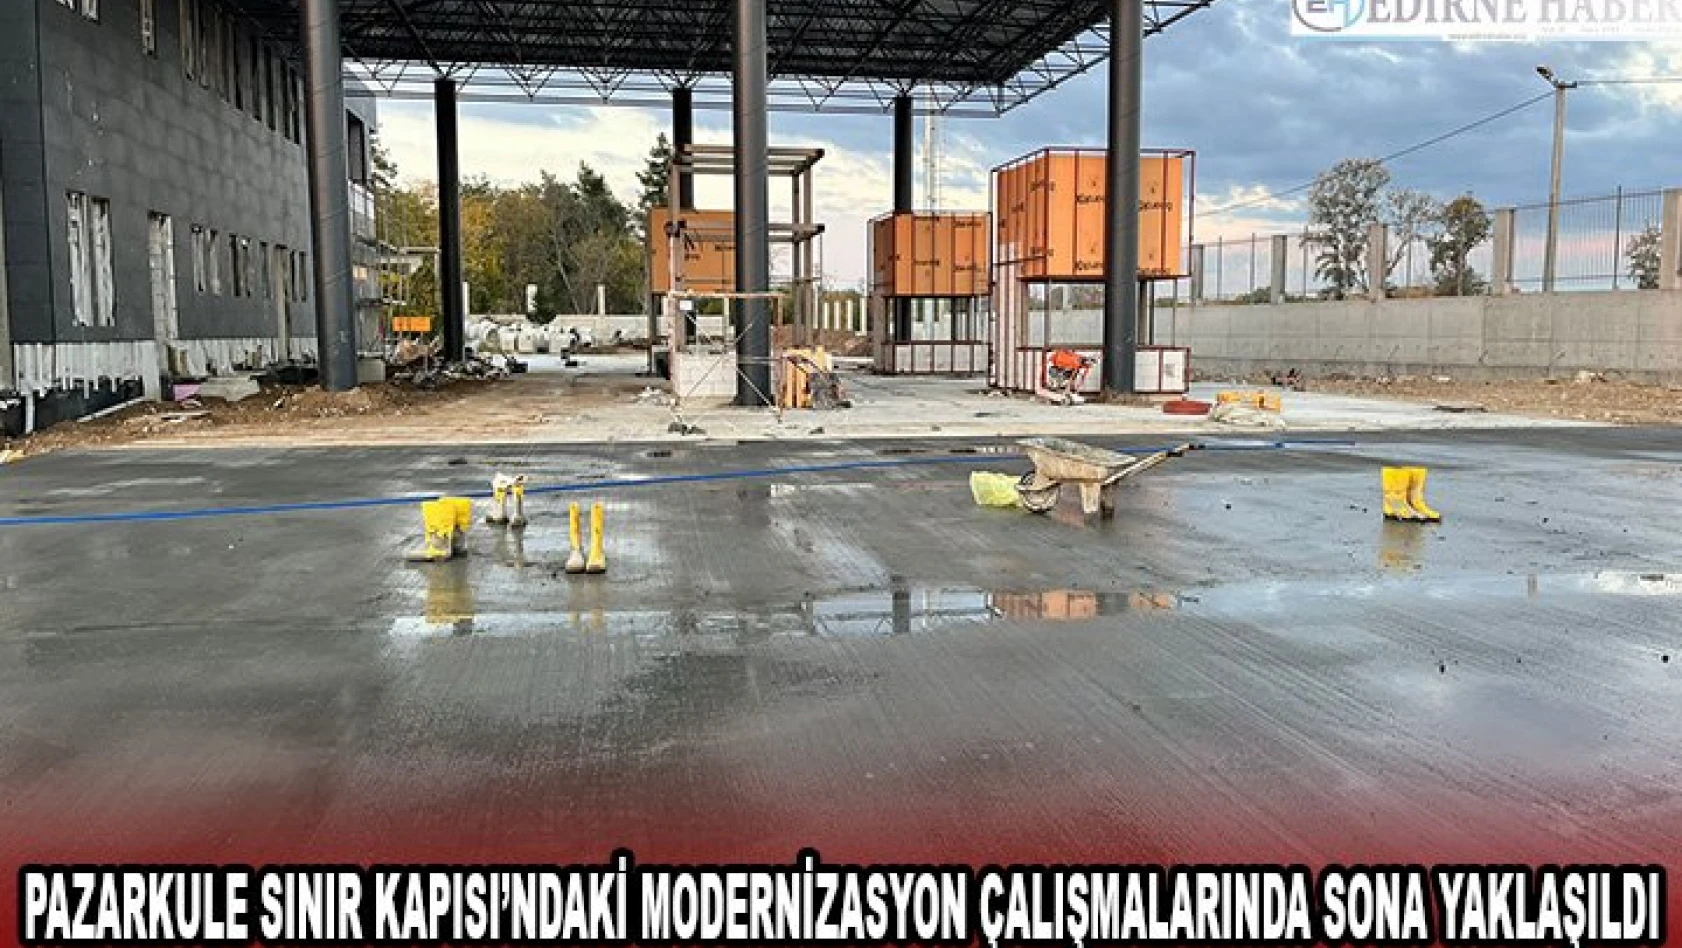 Pazarkule Sınır Kapısı'ndaki modernizasyon çalışmalarında sona yaklaşıldı